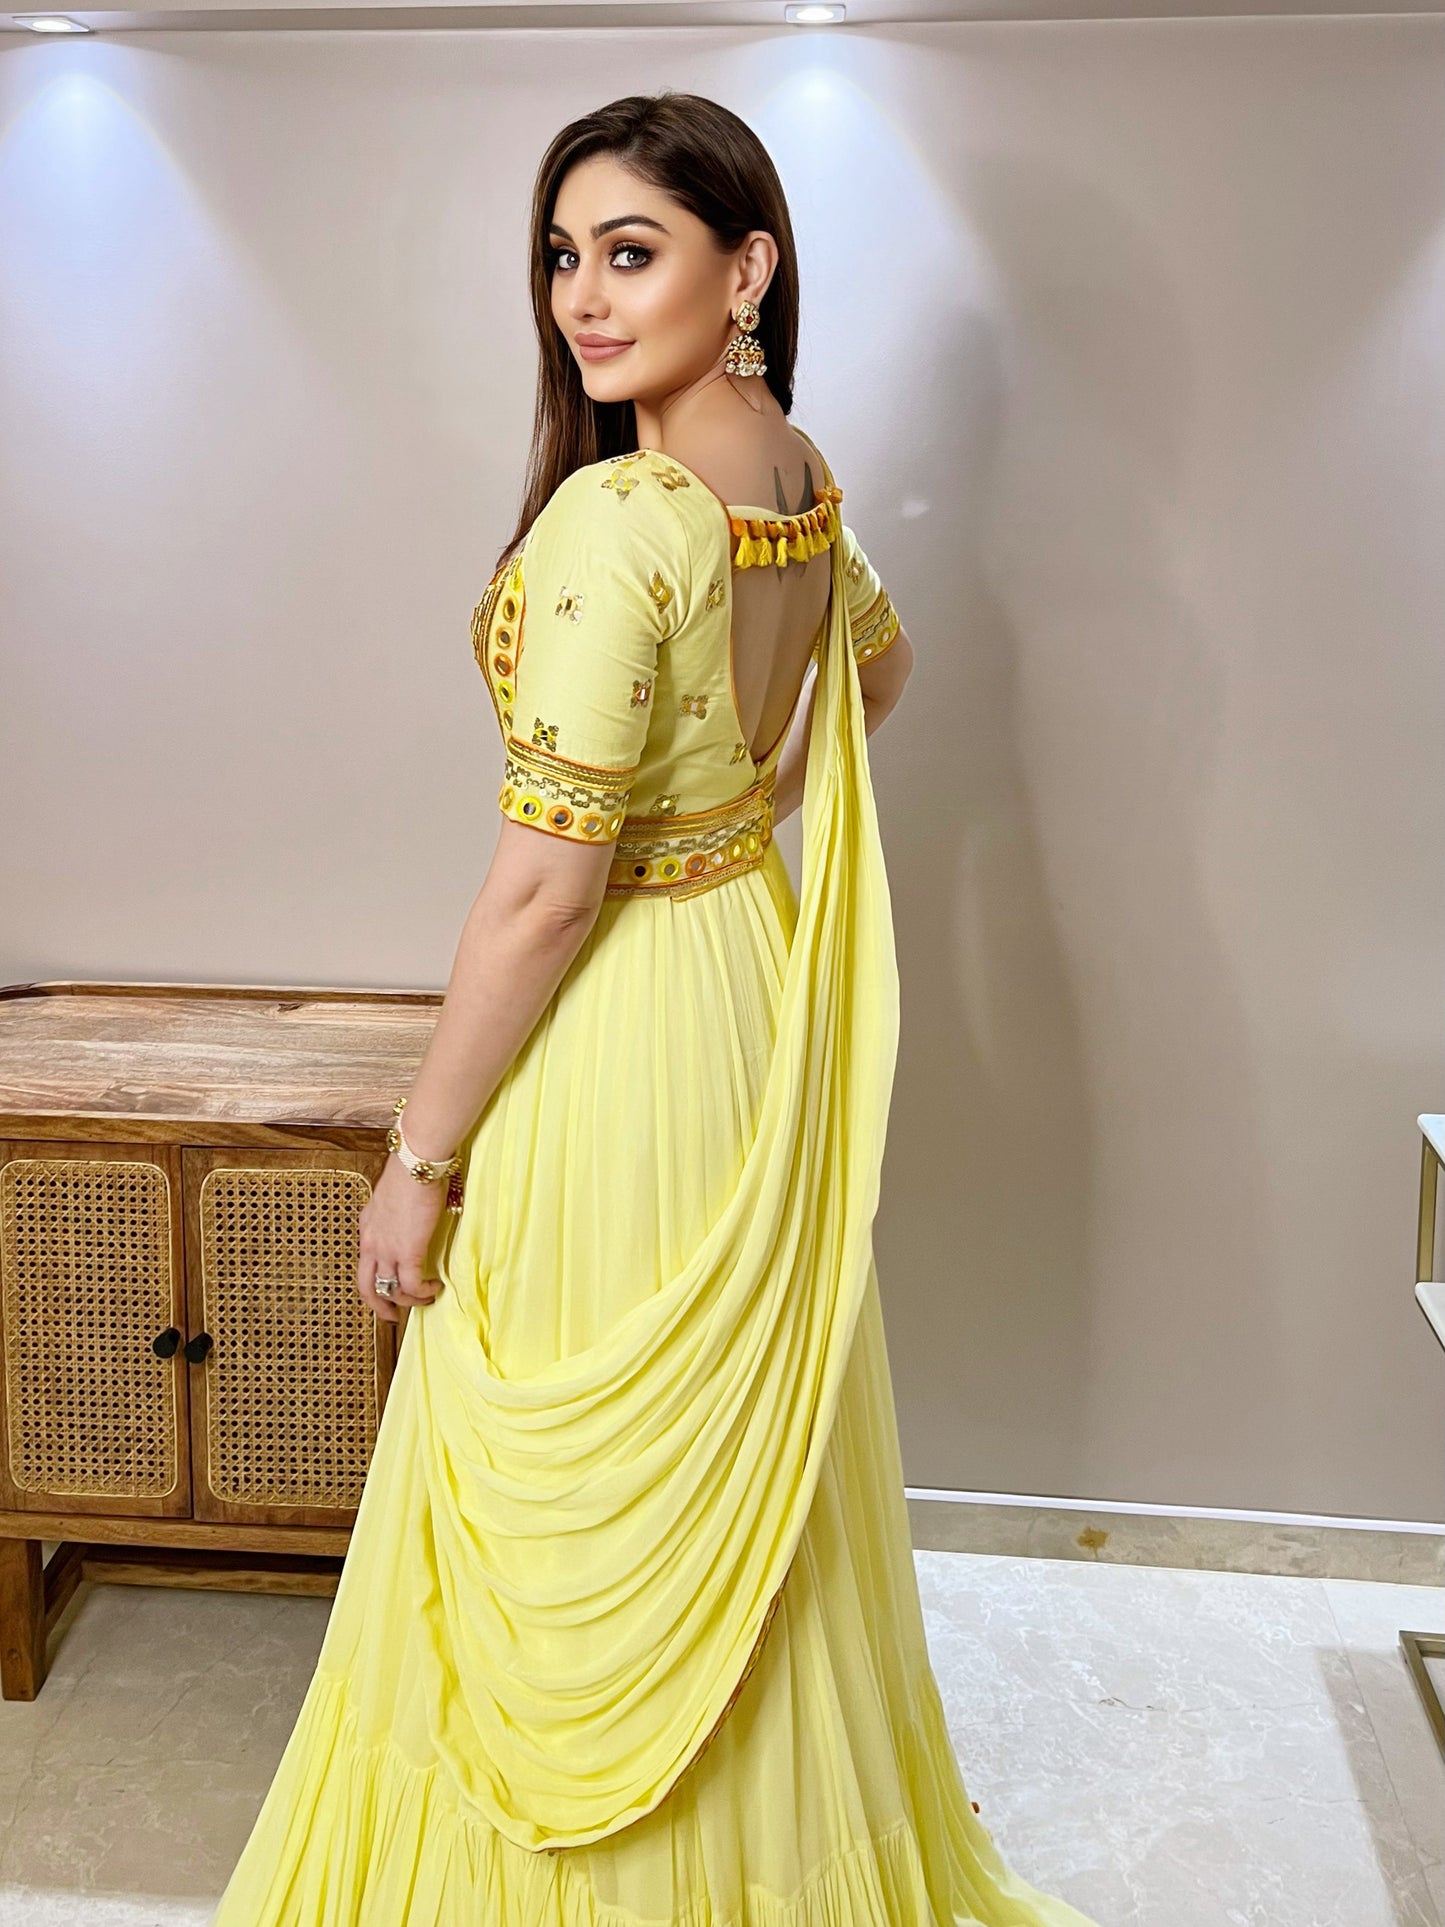 Shefali Jariwala In Saree Gown